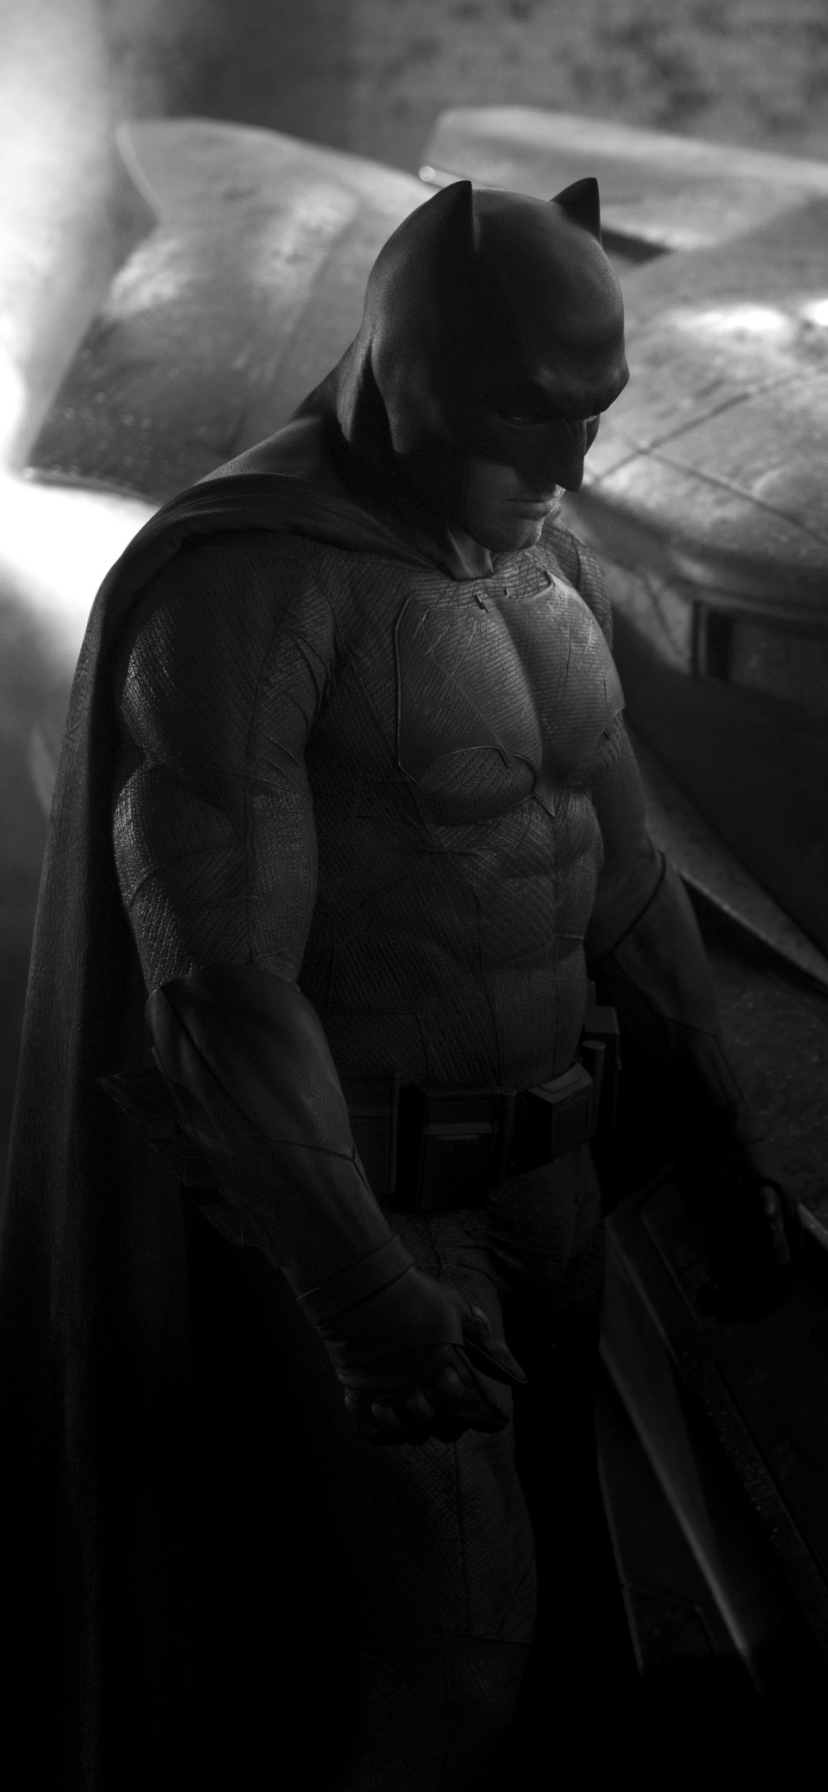 Batman from Batman V Superman